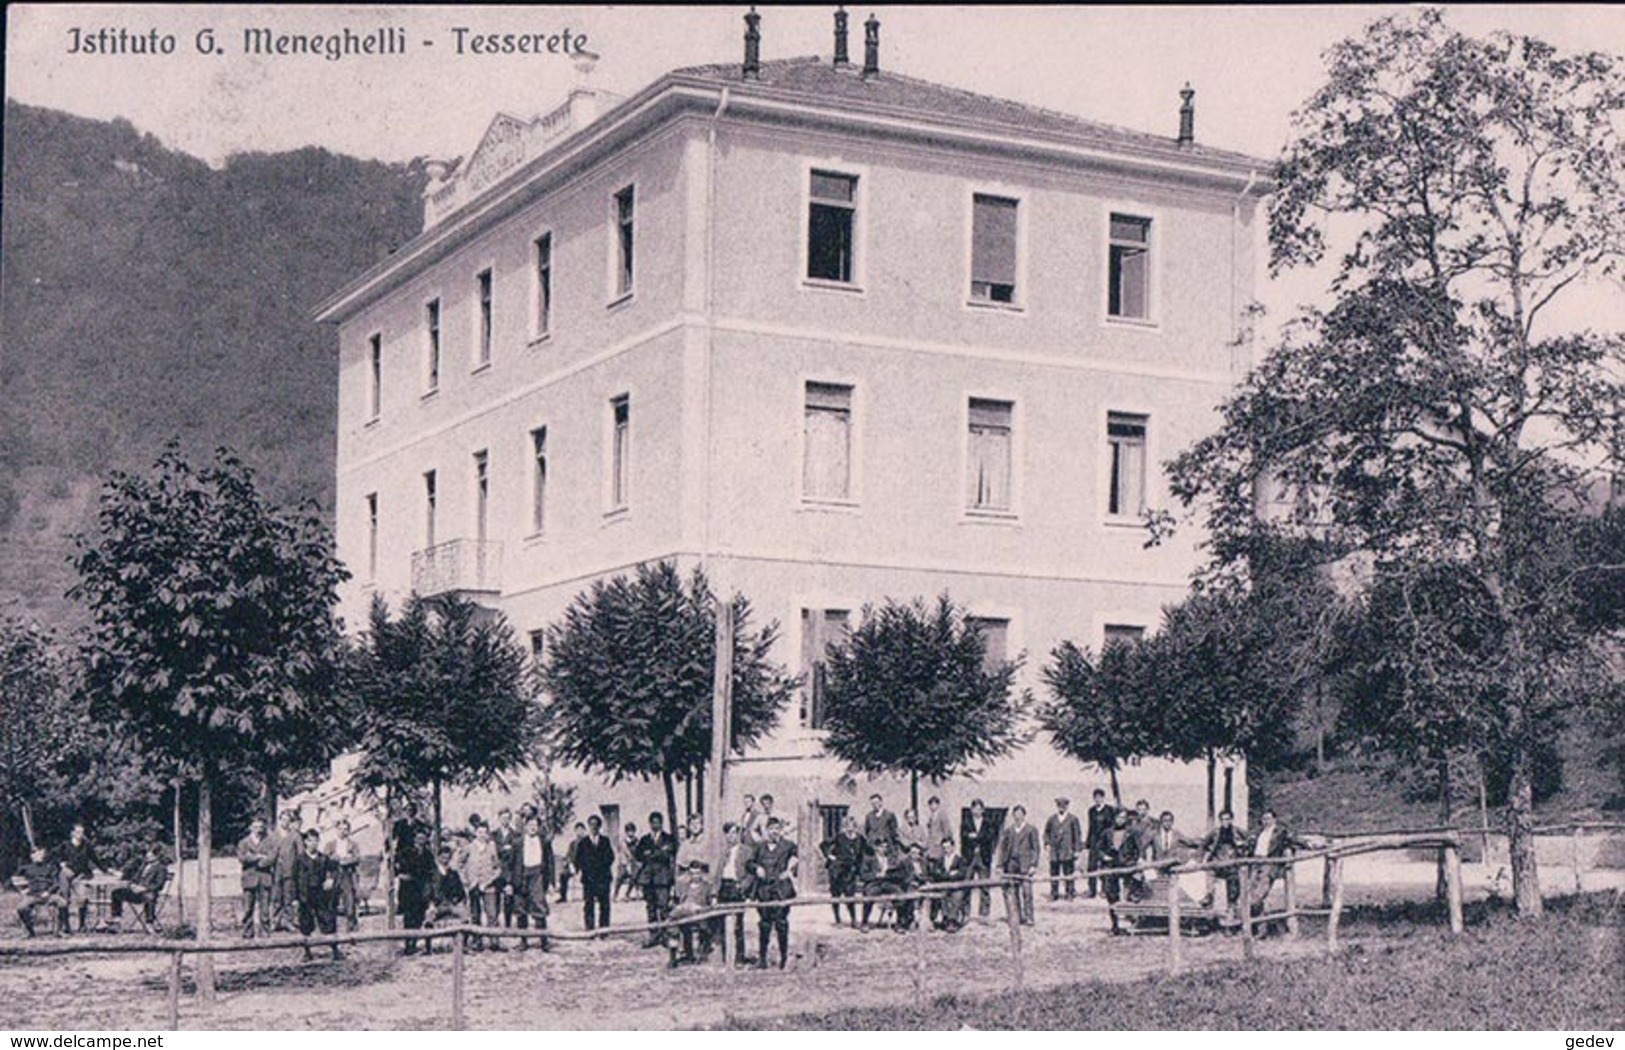 Tesserete TI, Istituto G. Meneghelli (17.5.1914) - Tesserete 